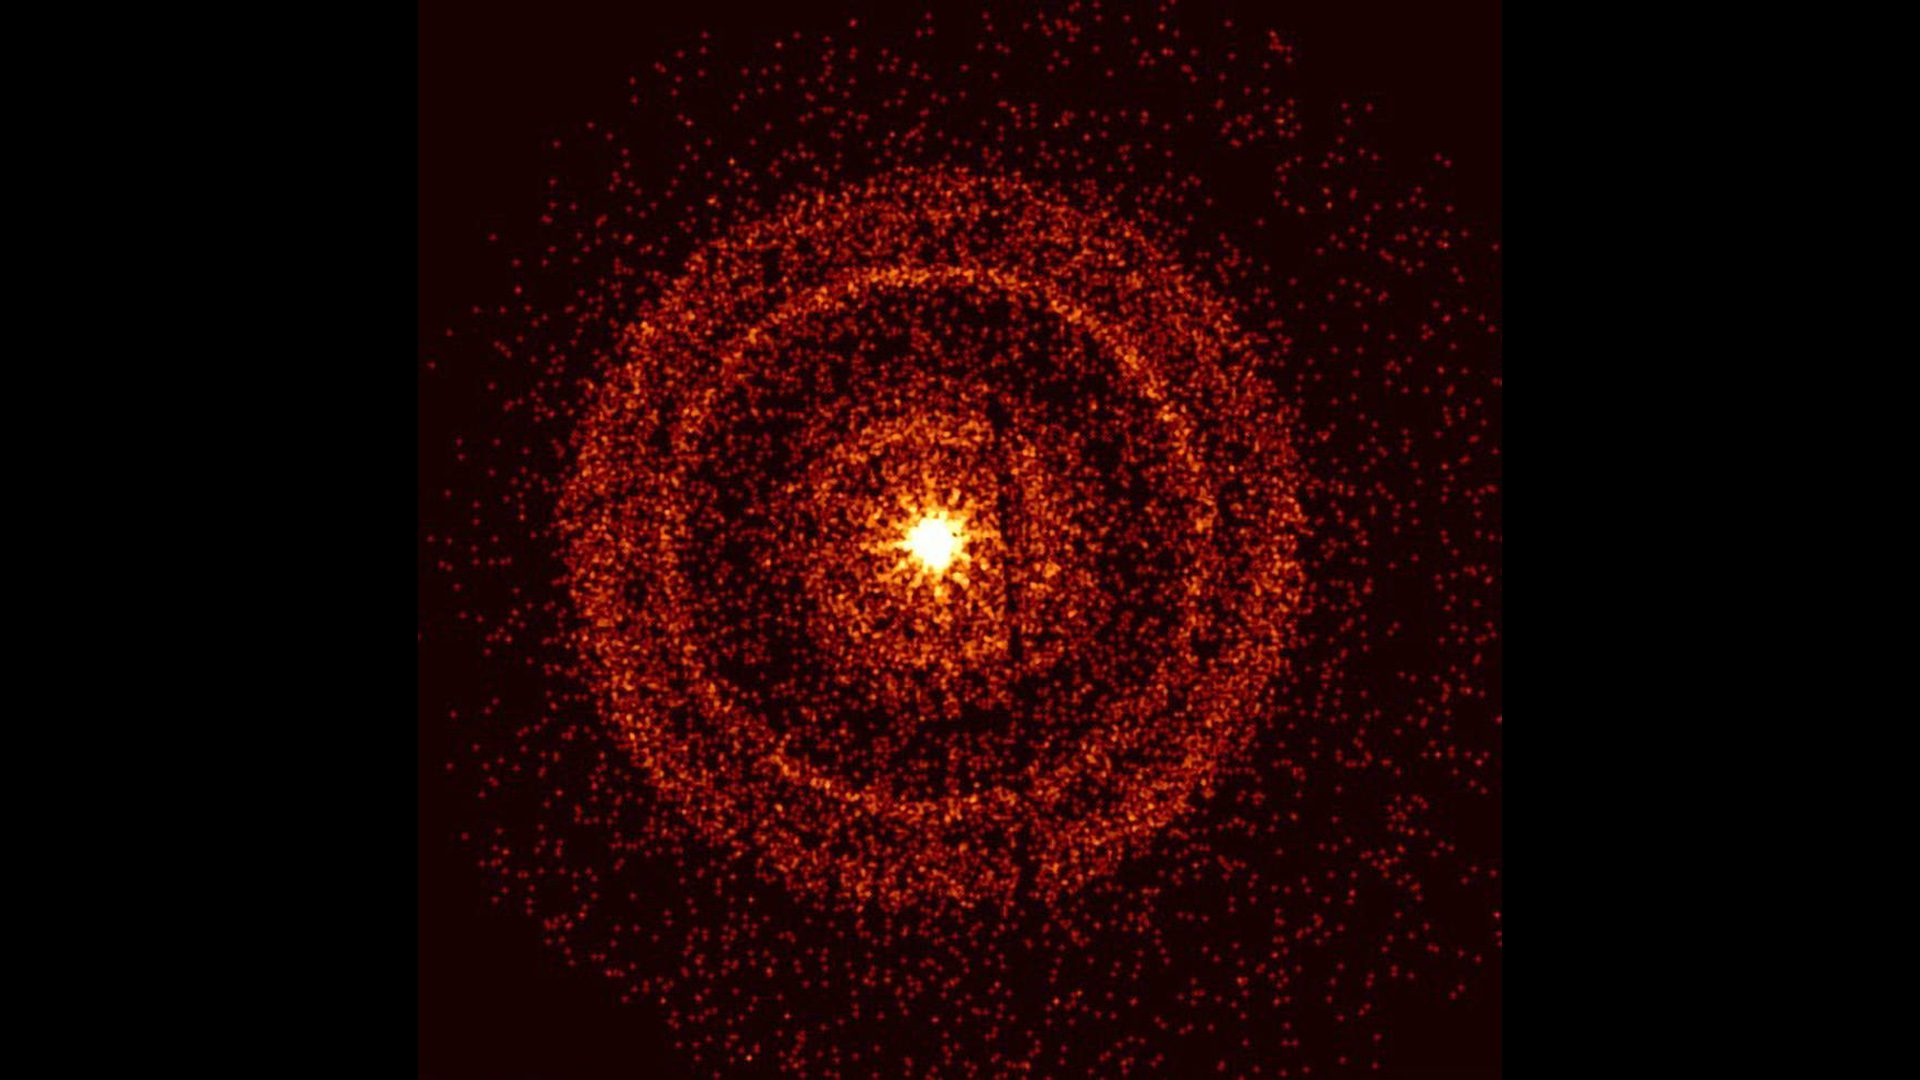 De helderste gammastraaluitbarsting ooit gezien, waargenomen door de Swift X-Ray Telescope, ongeveer een uur nadat deze ontplofte.